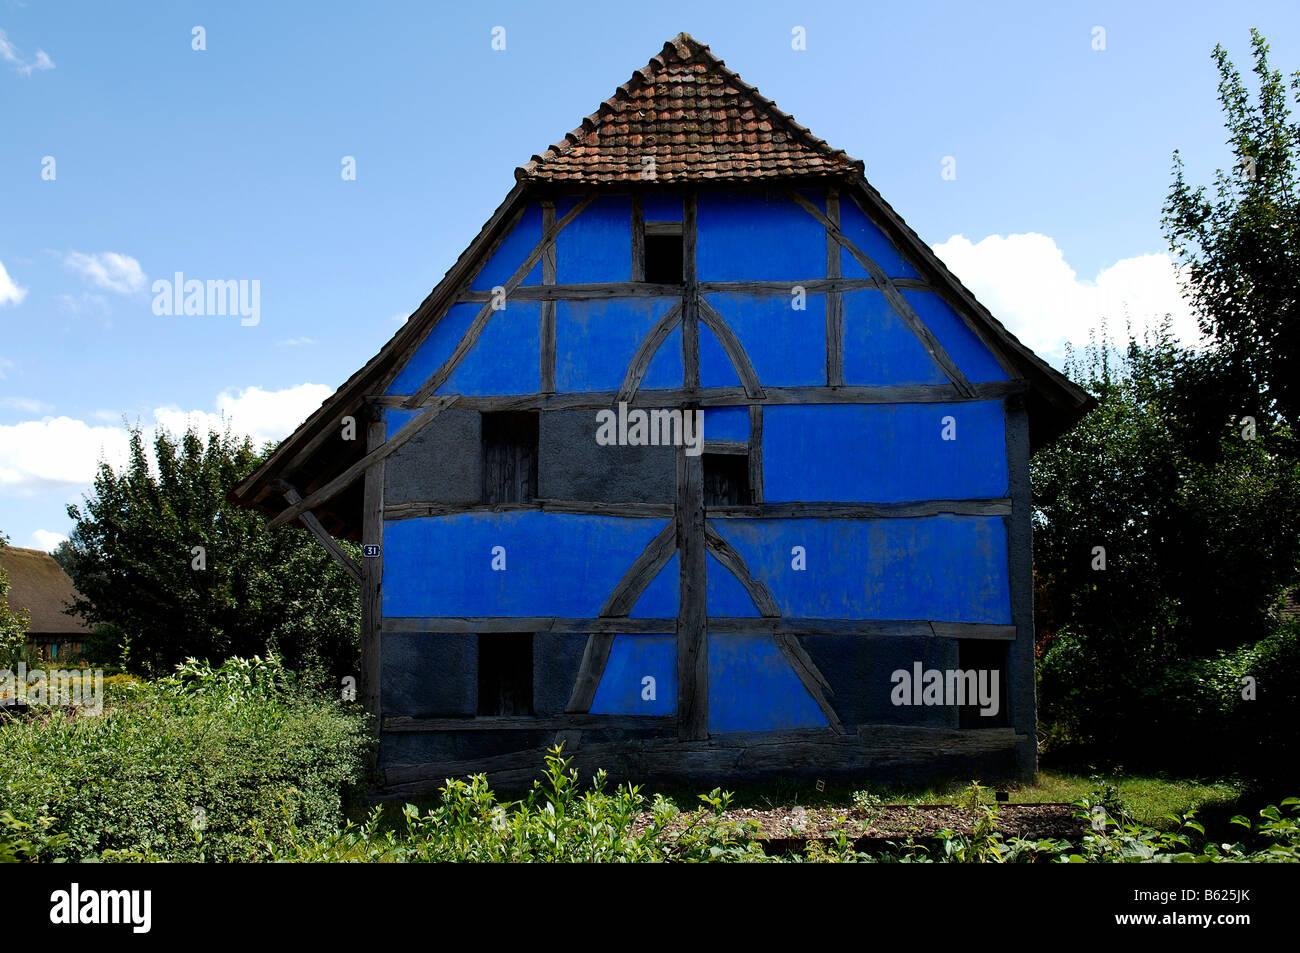 Alsacienne historique maison à colombages, l'éco-musée, Ungersheim, Alsace, France, Europe Banque D'Images